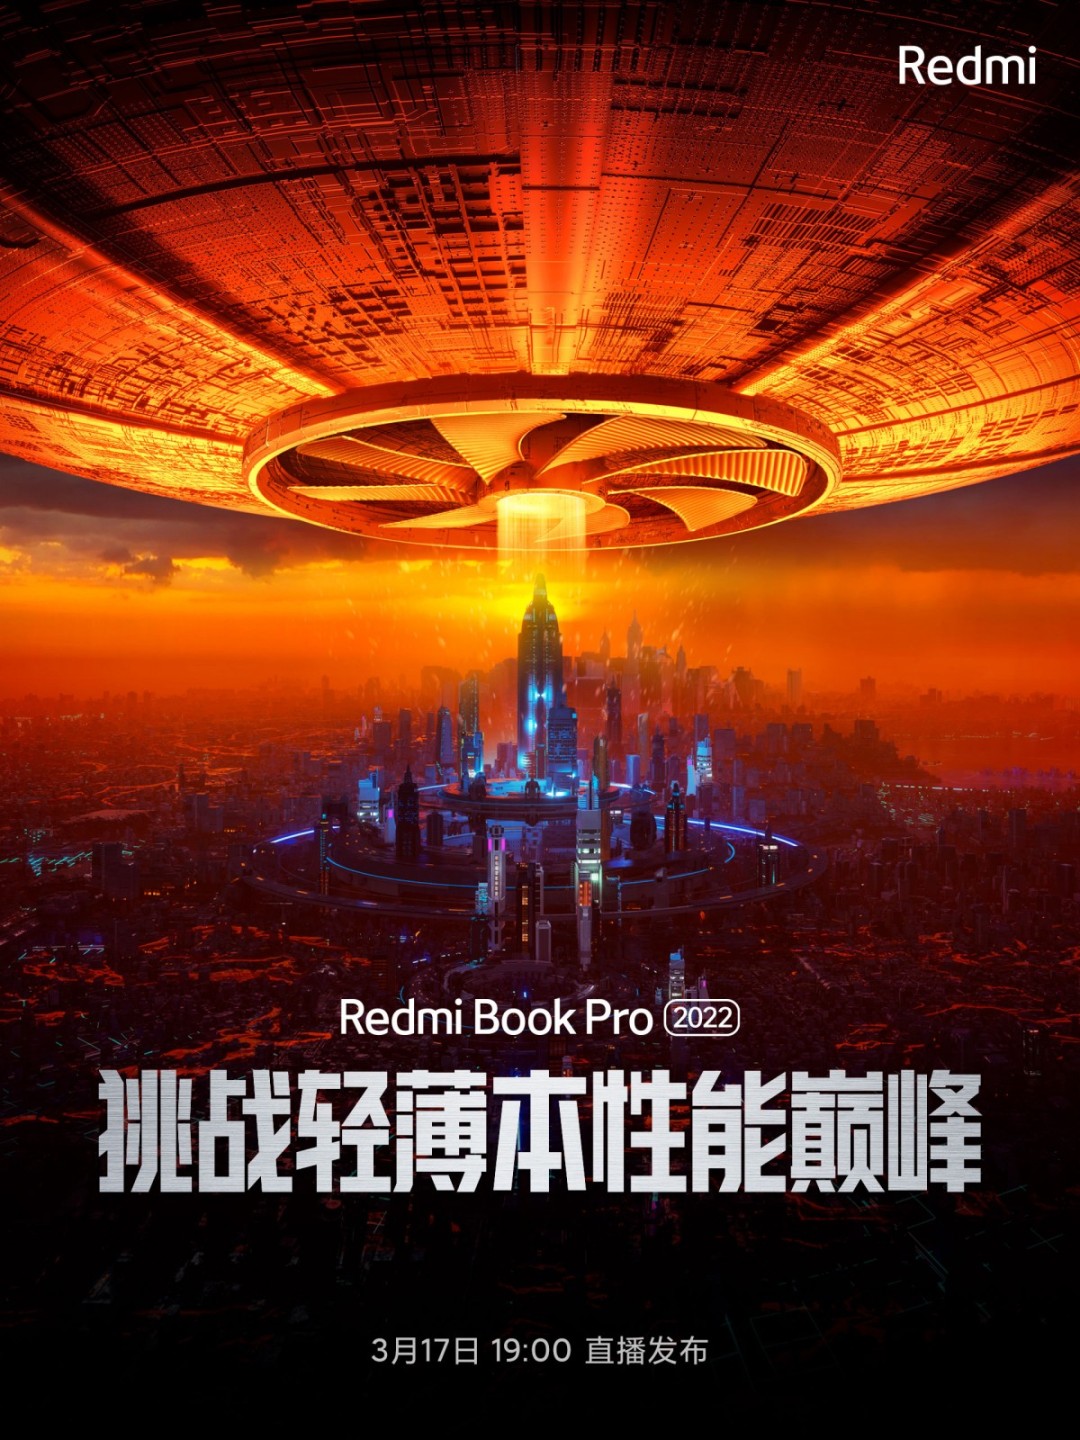 سعر لاب توب RedmiBook Pro 2022 ريدمي بوك برو 2022